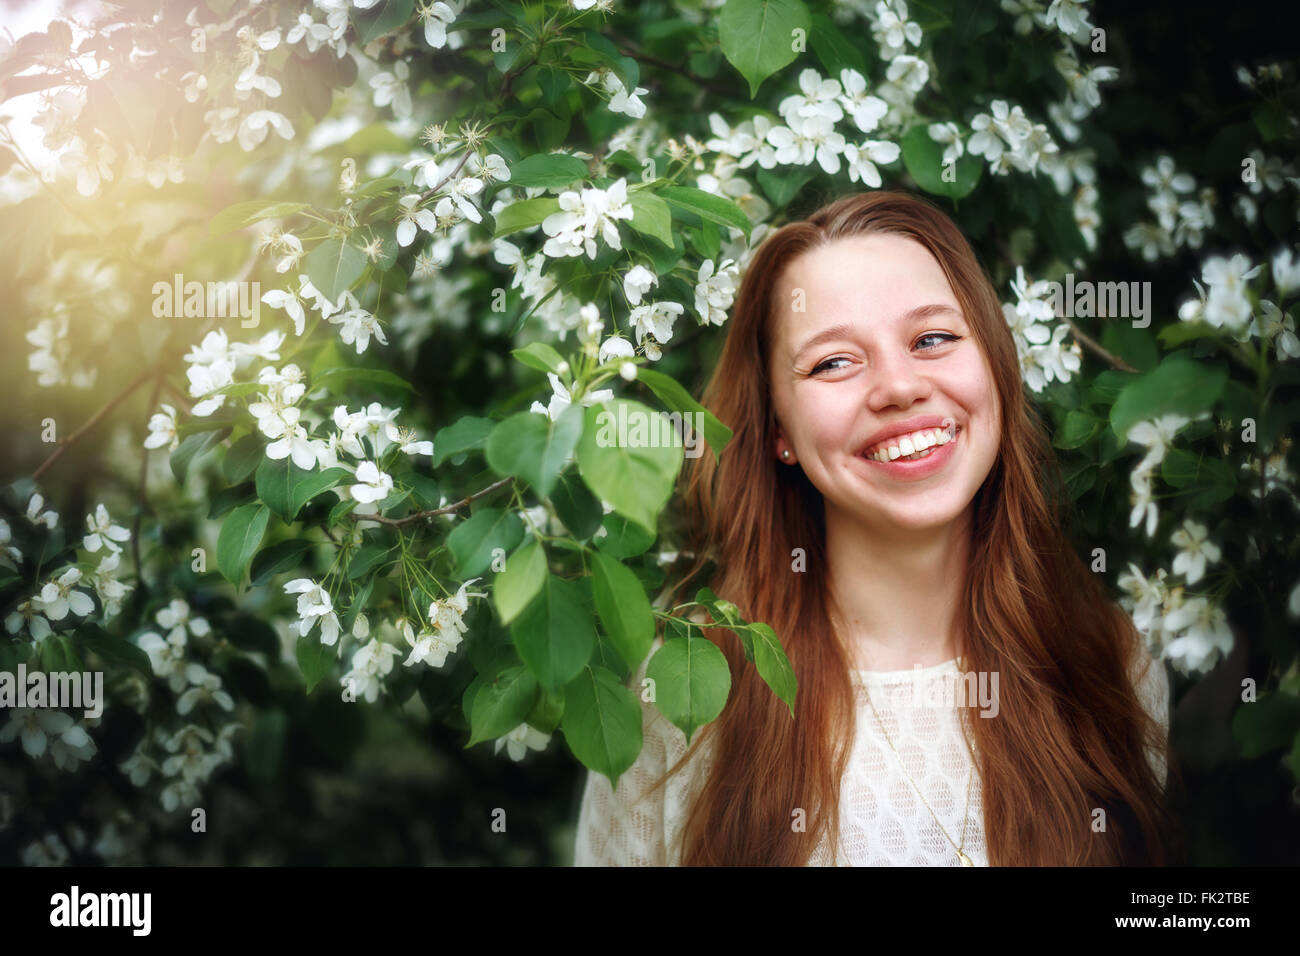 Headshot retrato de joven bella entre las flores de la primavera en la naturaleza. Mujeres riendo y disfrutando de la vida y del momento. Foto de stock